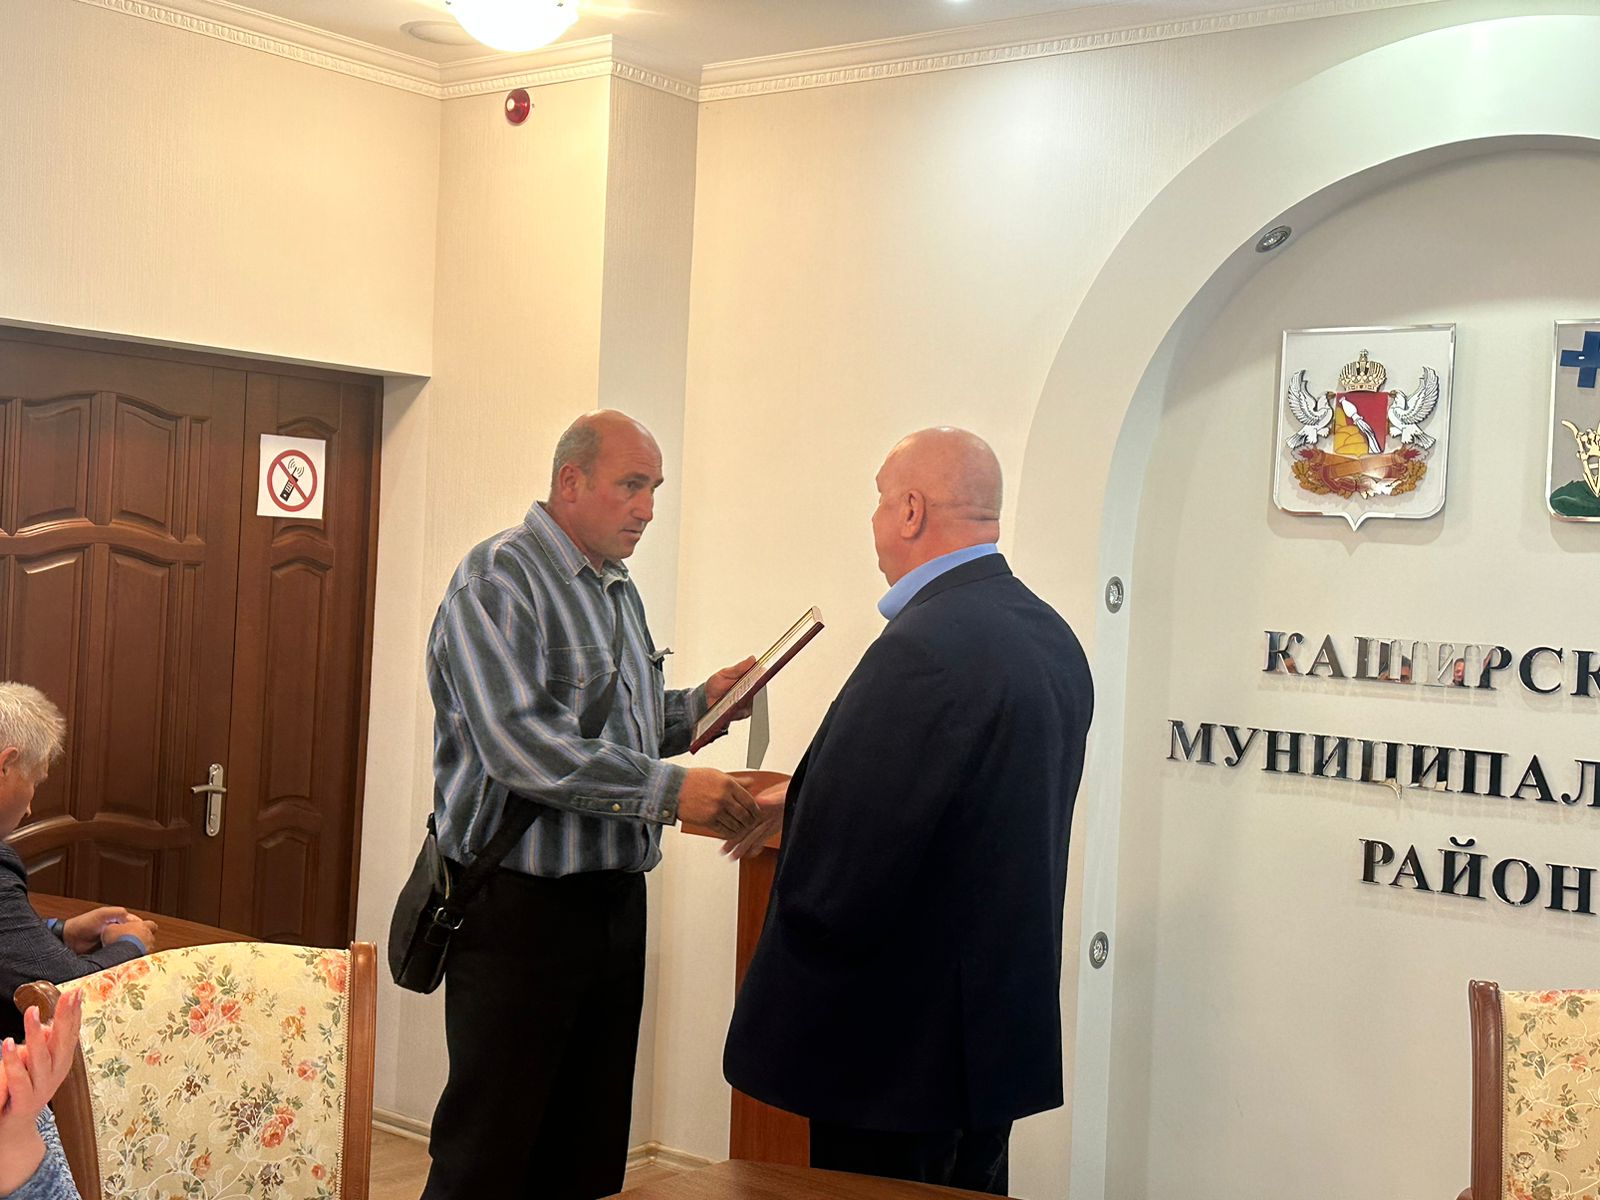 Председатели ТОС Старинского сельского поселения получили благодарственные письма от губернатора Воронежской области.